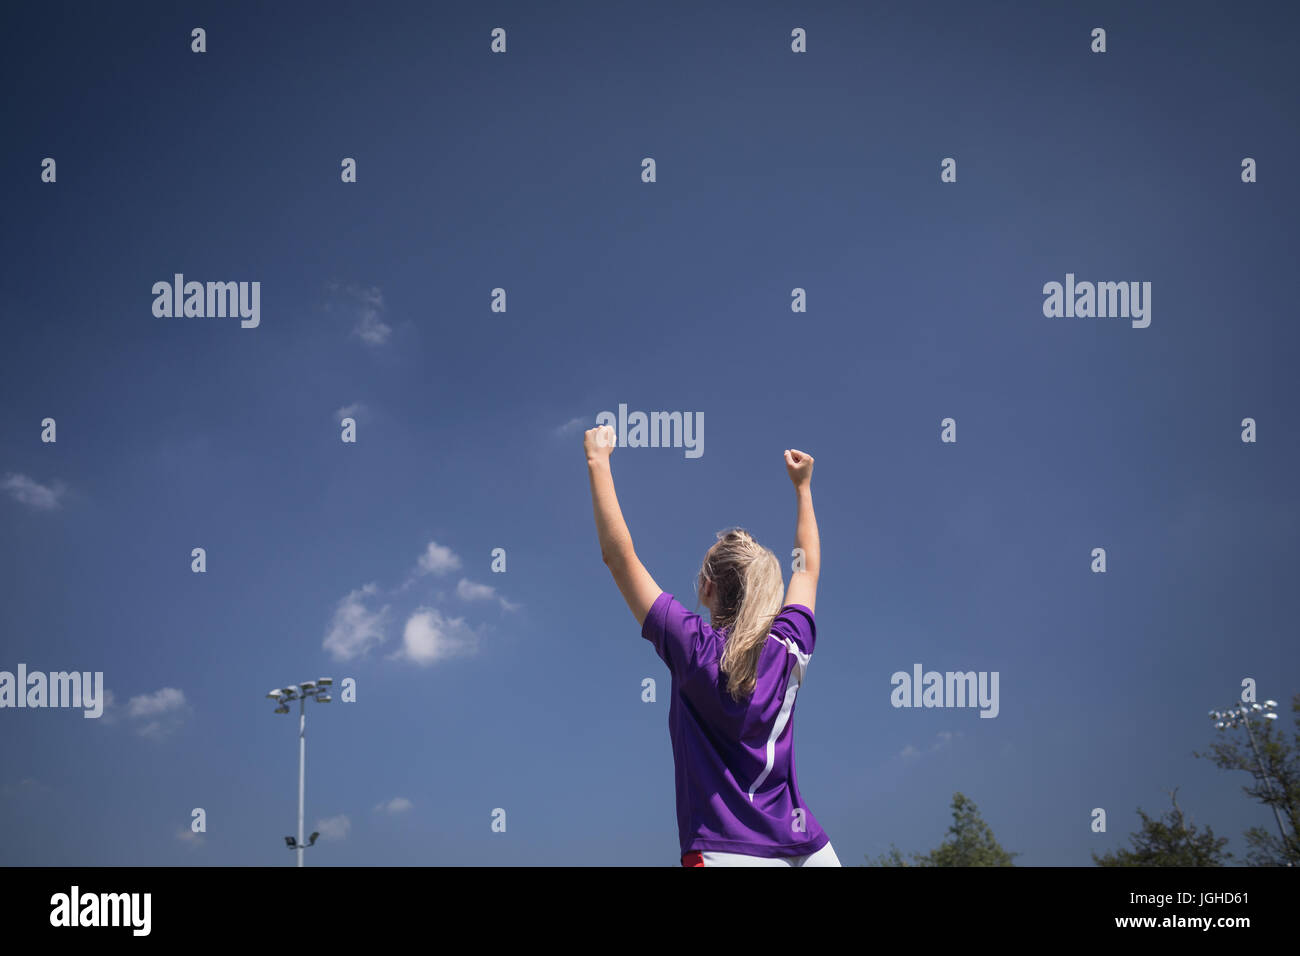 Vue arrière du joueur de soccer féminin avec bras levés contre le ciel bleu Banque D'Images